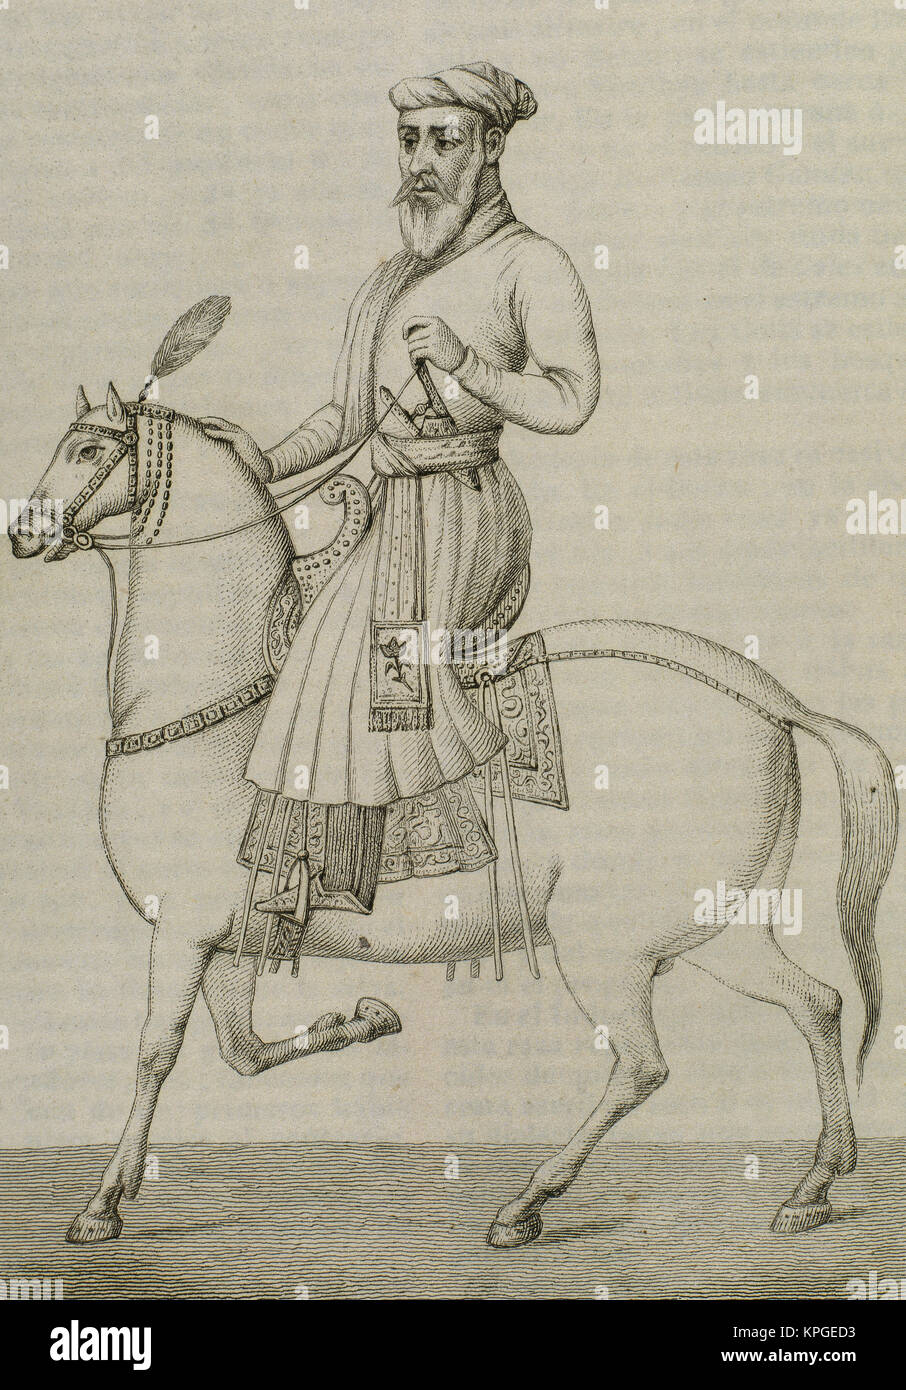 La India. Imperio mogol. Mirza Mollah a caballo. Retrato. Grabado. 'Panorama universal", 1845. Foto de stock